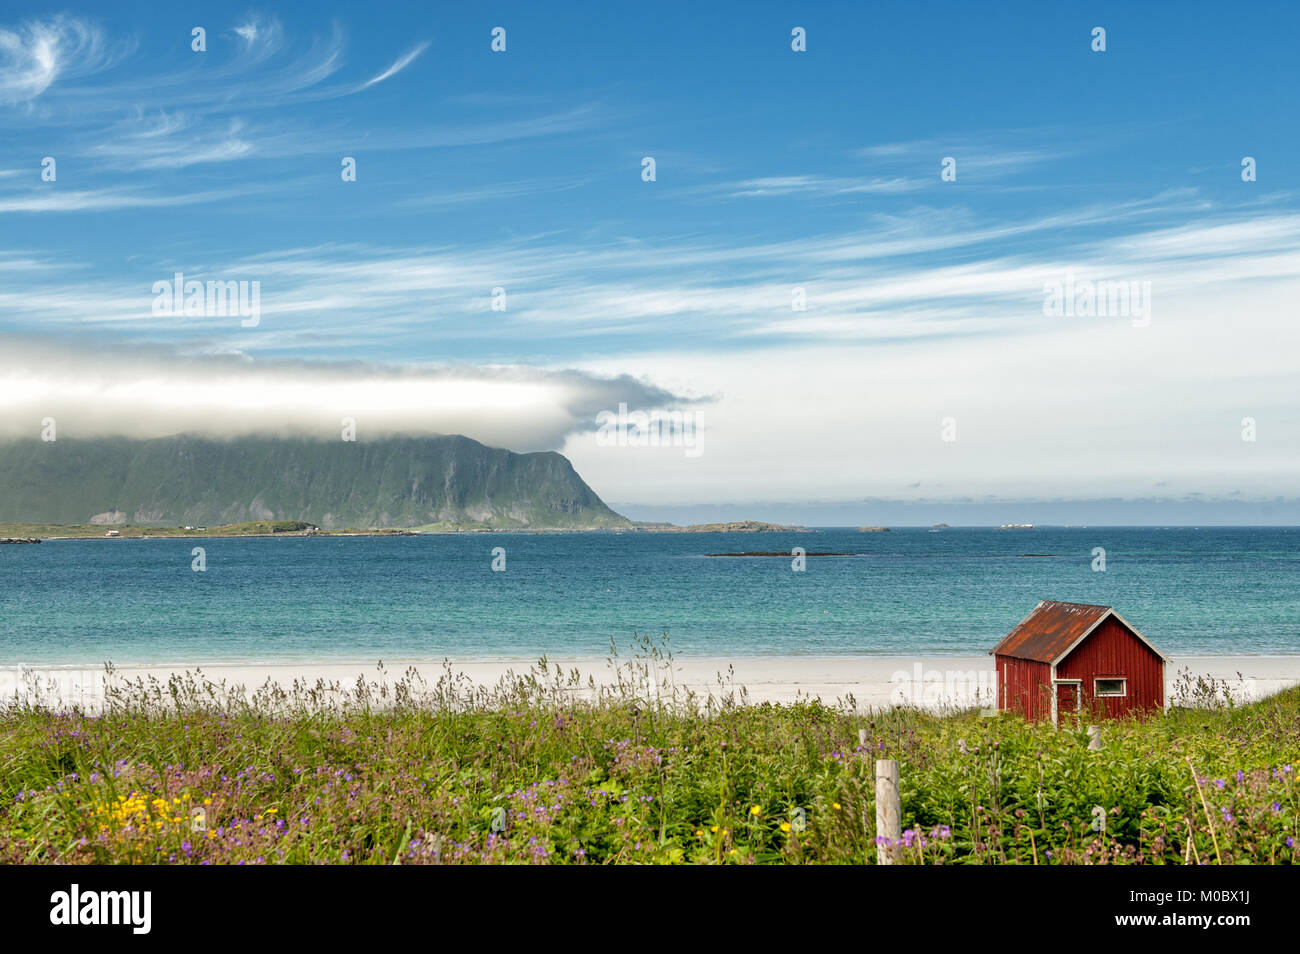 Il paesaggio della costa a Ramberg sulle isole Lofoten in Norvegia del nord. Lofoten è una popolare destinazione turistica. Foto Stock